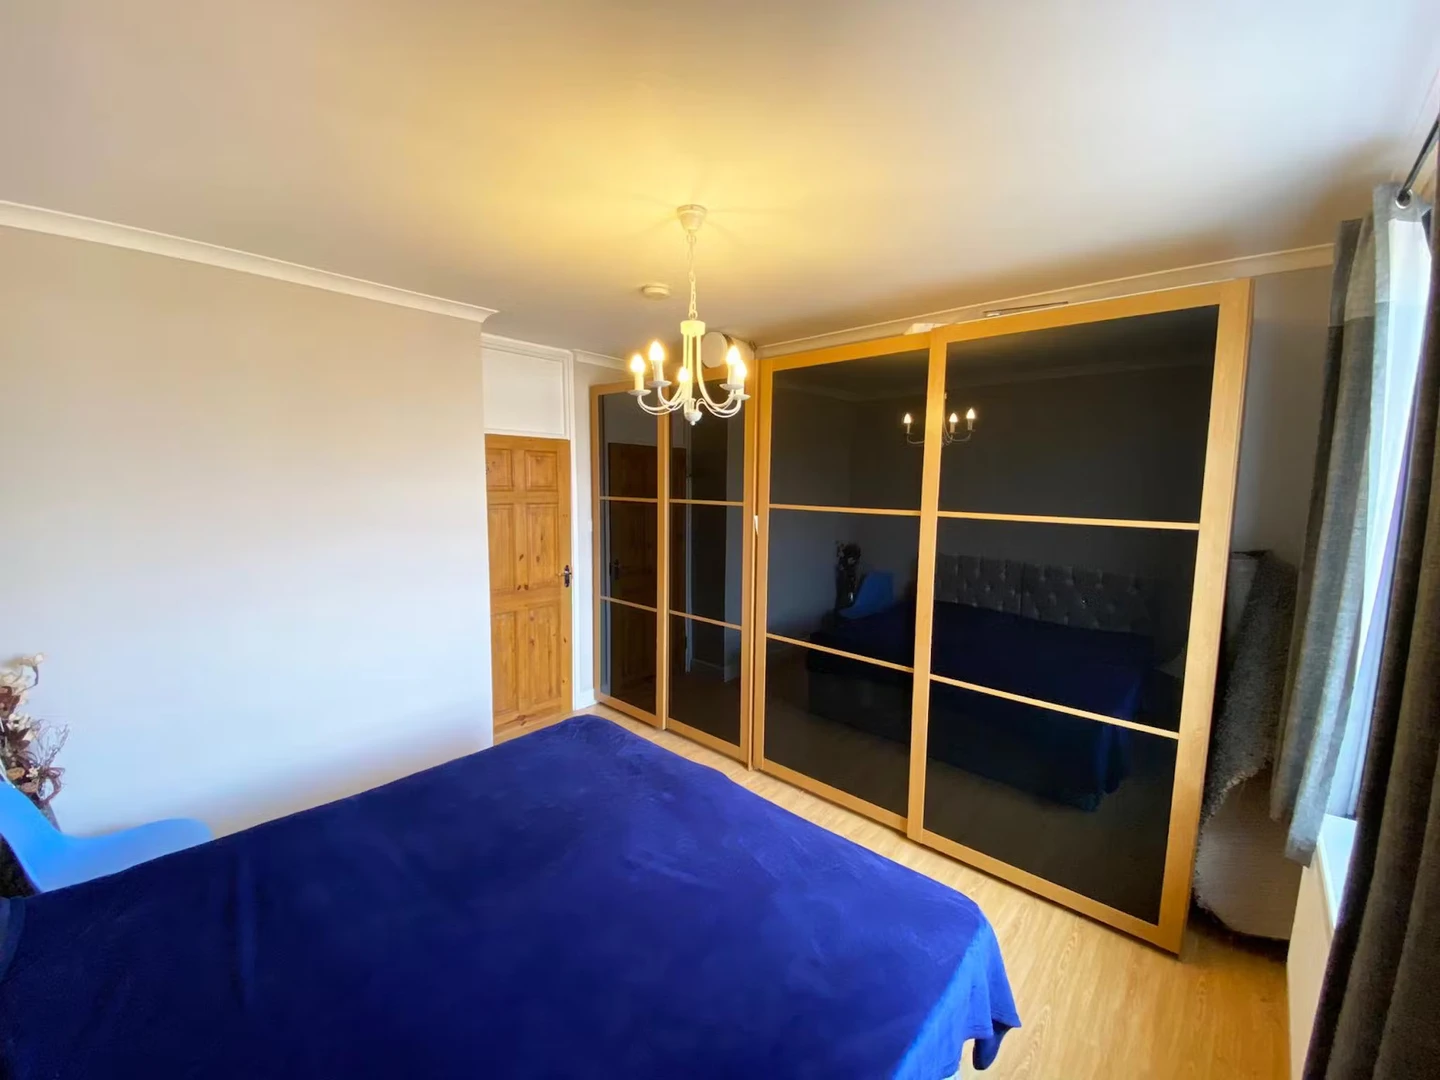 Edinburgh de çift kişilik yataklı kiralık oda